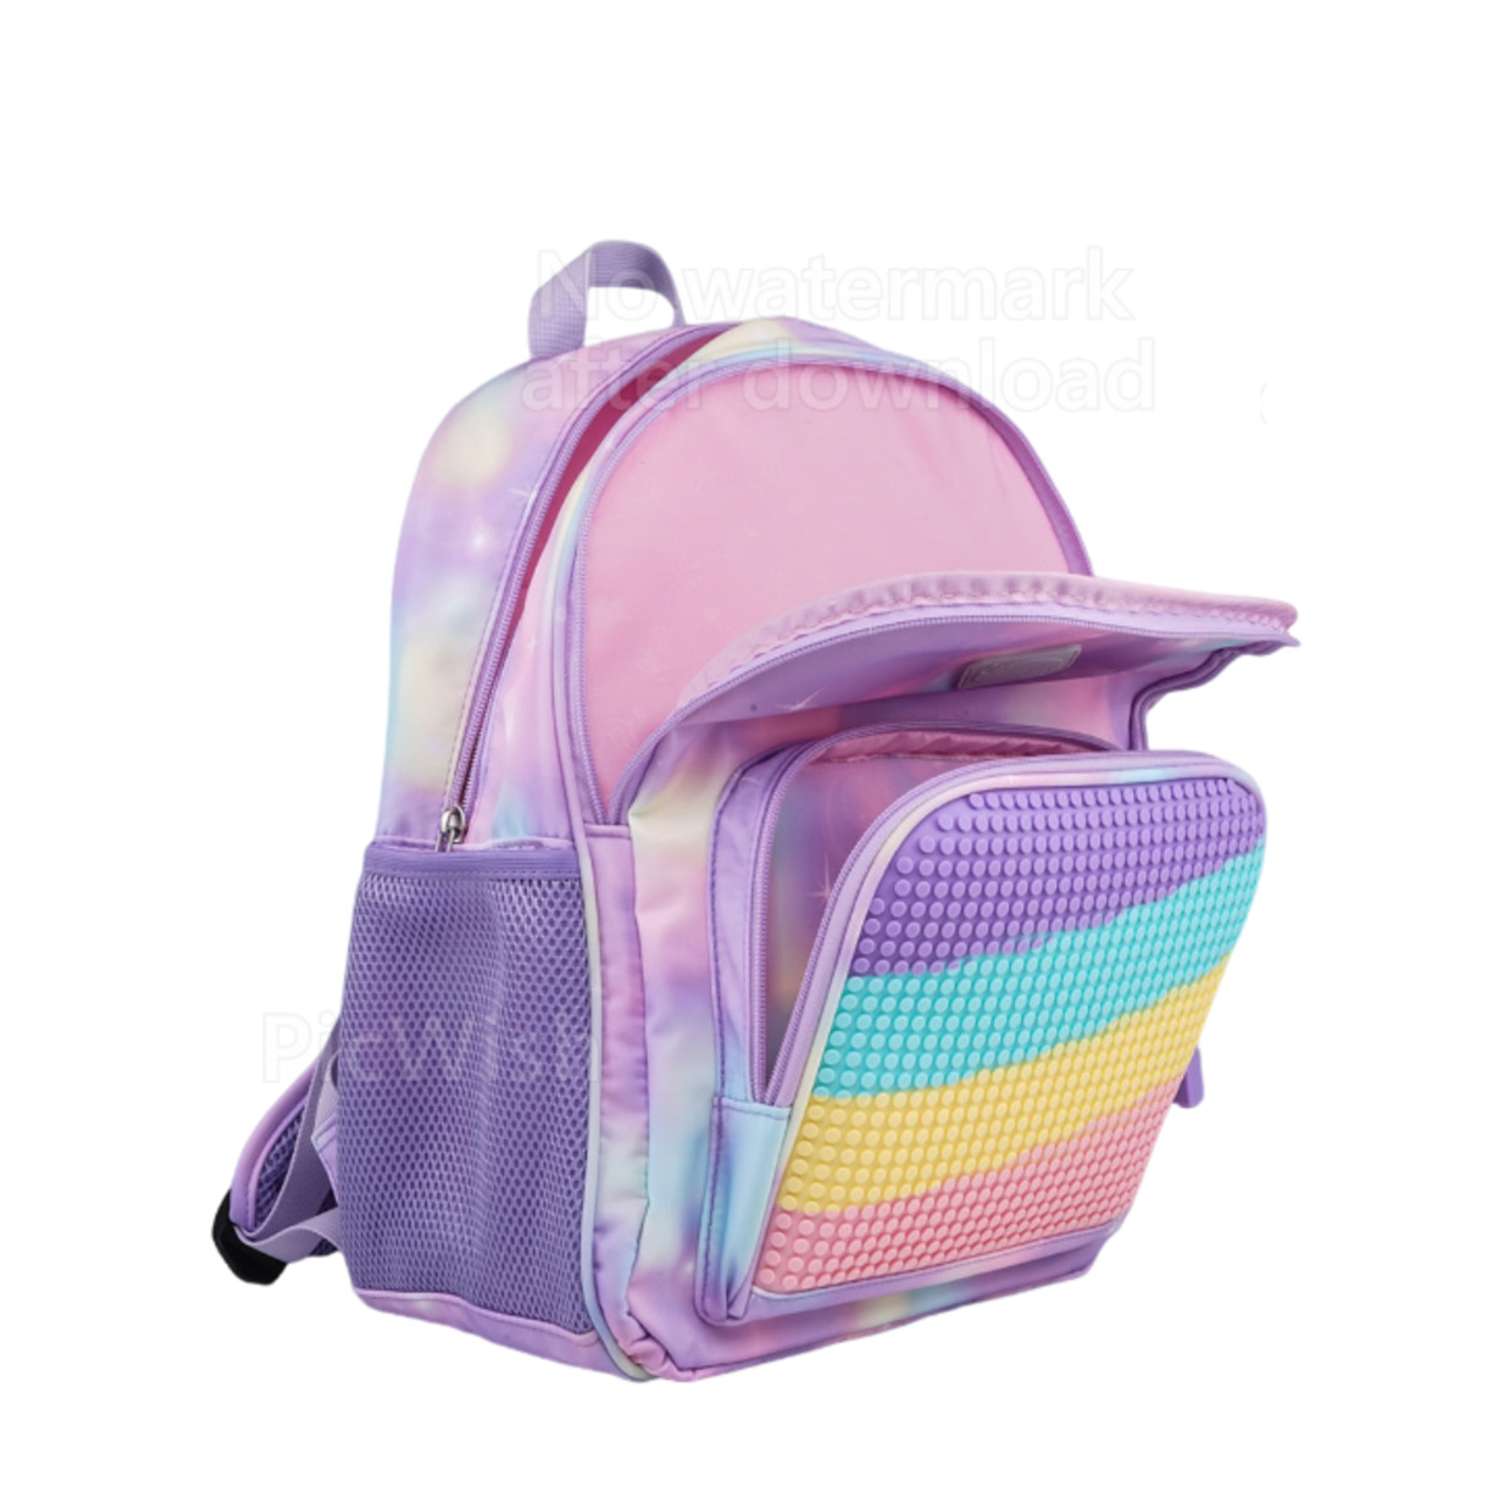 Рюкзак пиксельный Upixel rainbow Futuristic Kids School Bag U21-001 фиолетовый - фото 3